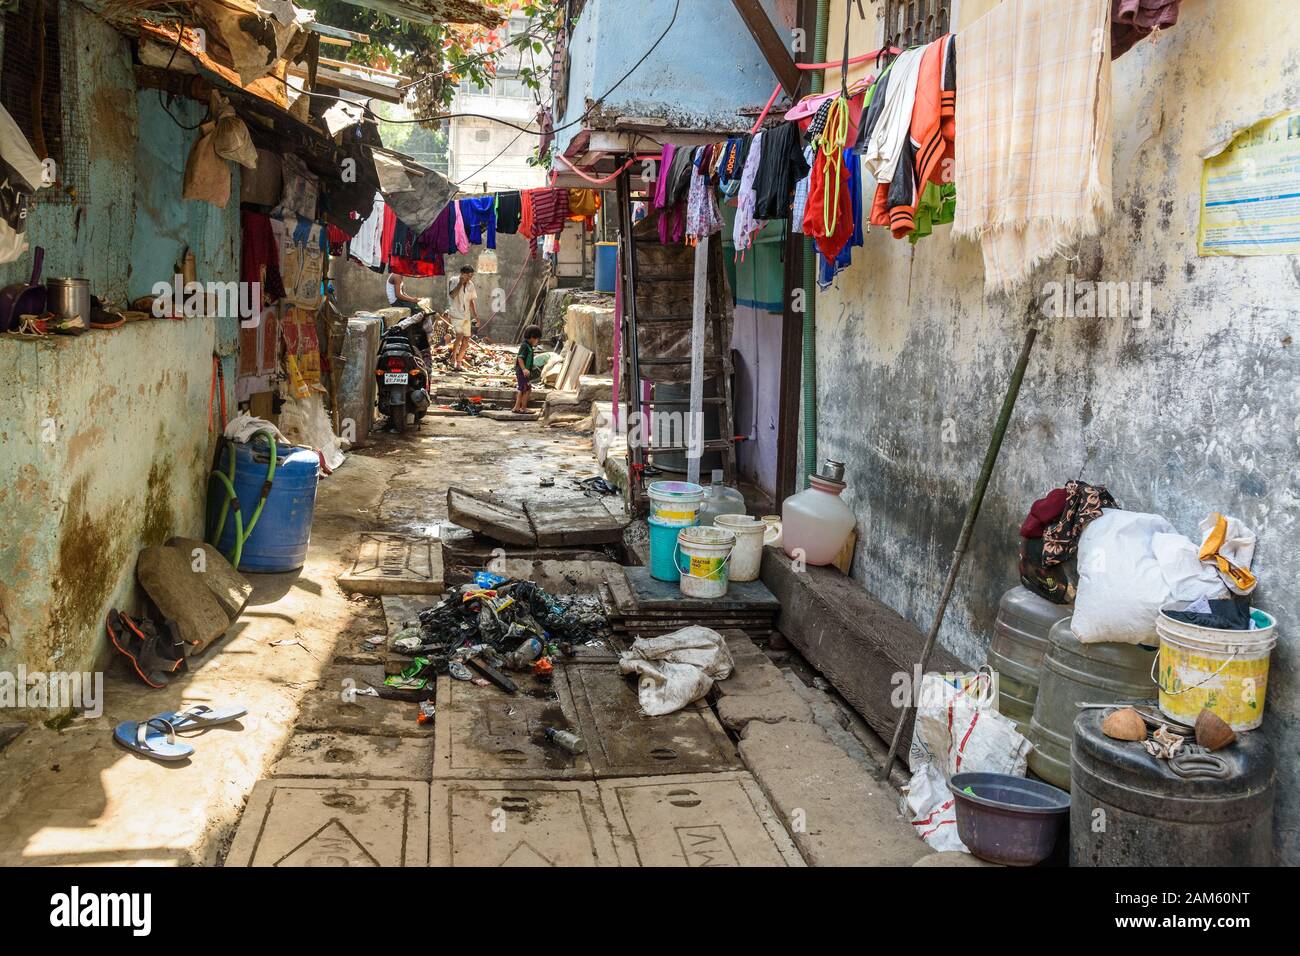 Auf Der Straße In Dharavi Slum In Mumbai Indien Stockfotografie Alamy 0710